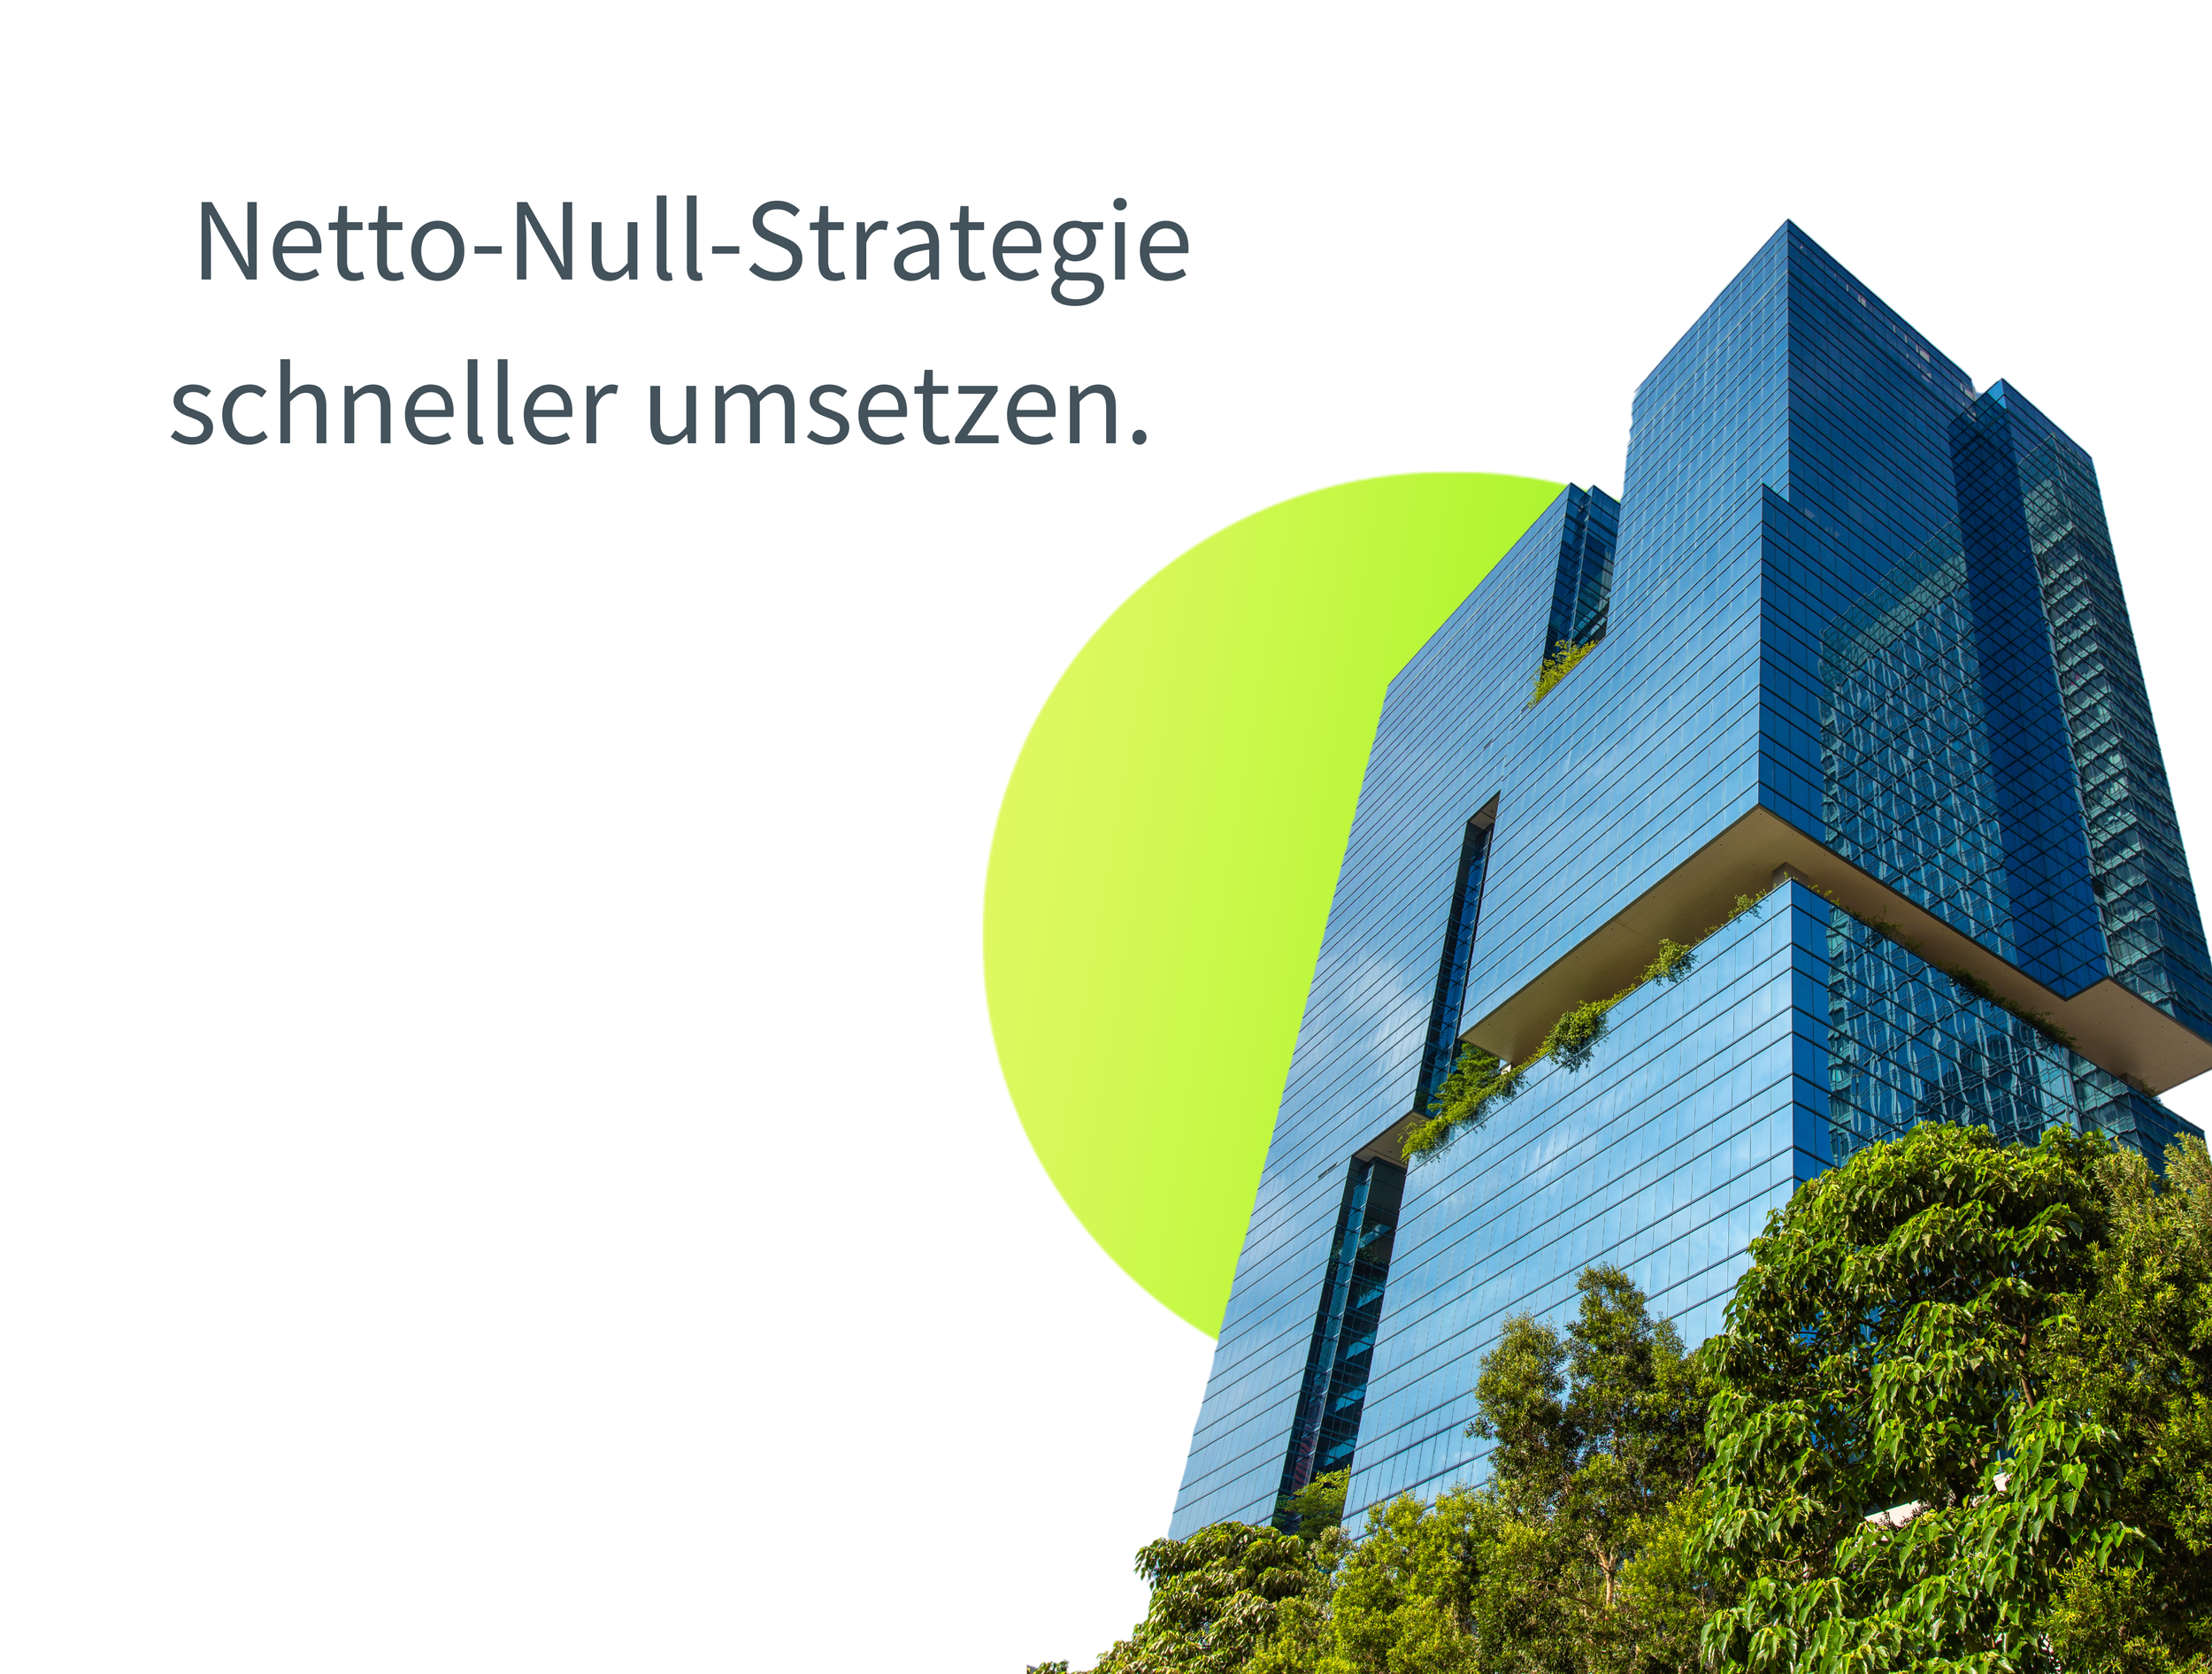 Netto-Null-Strategie schneller umsetzen